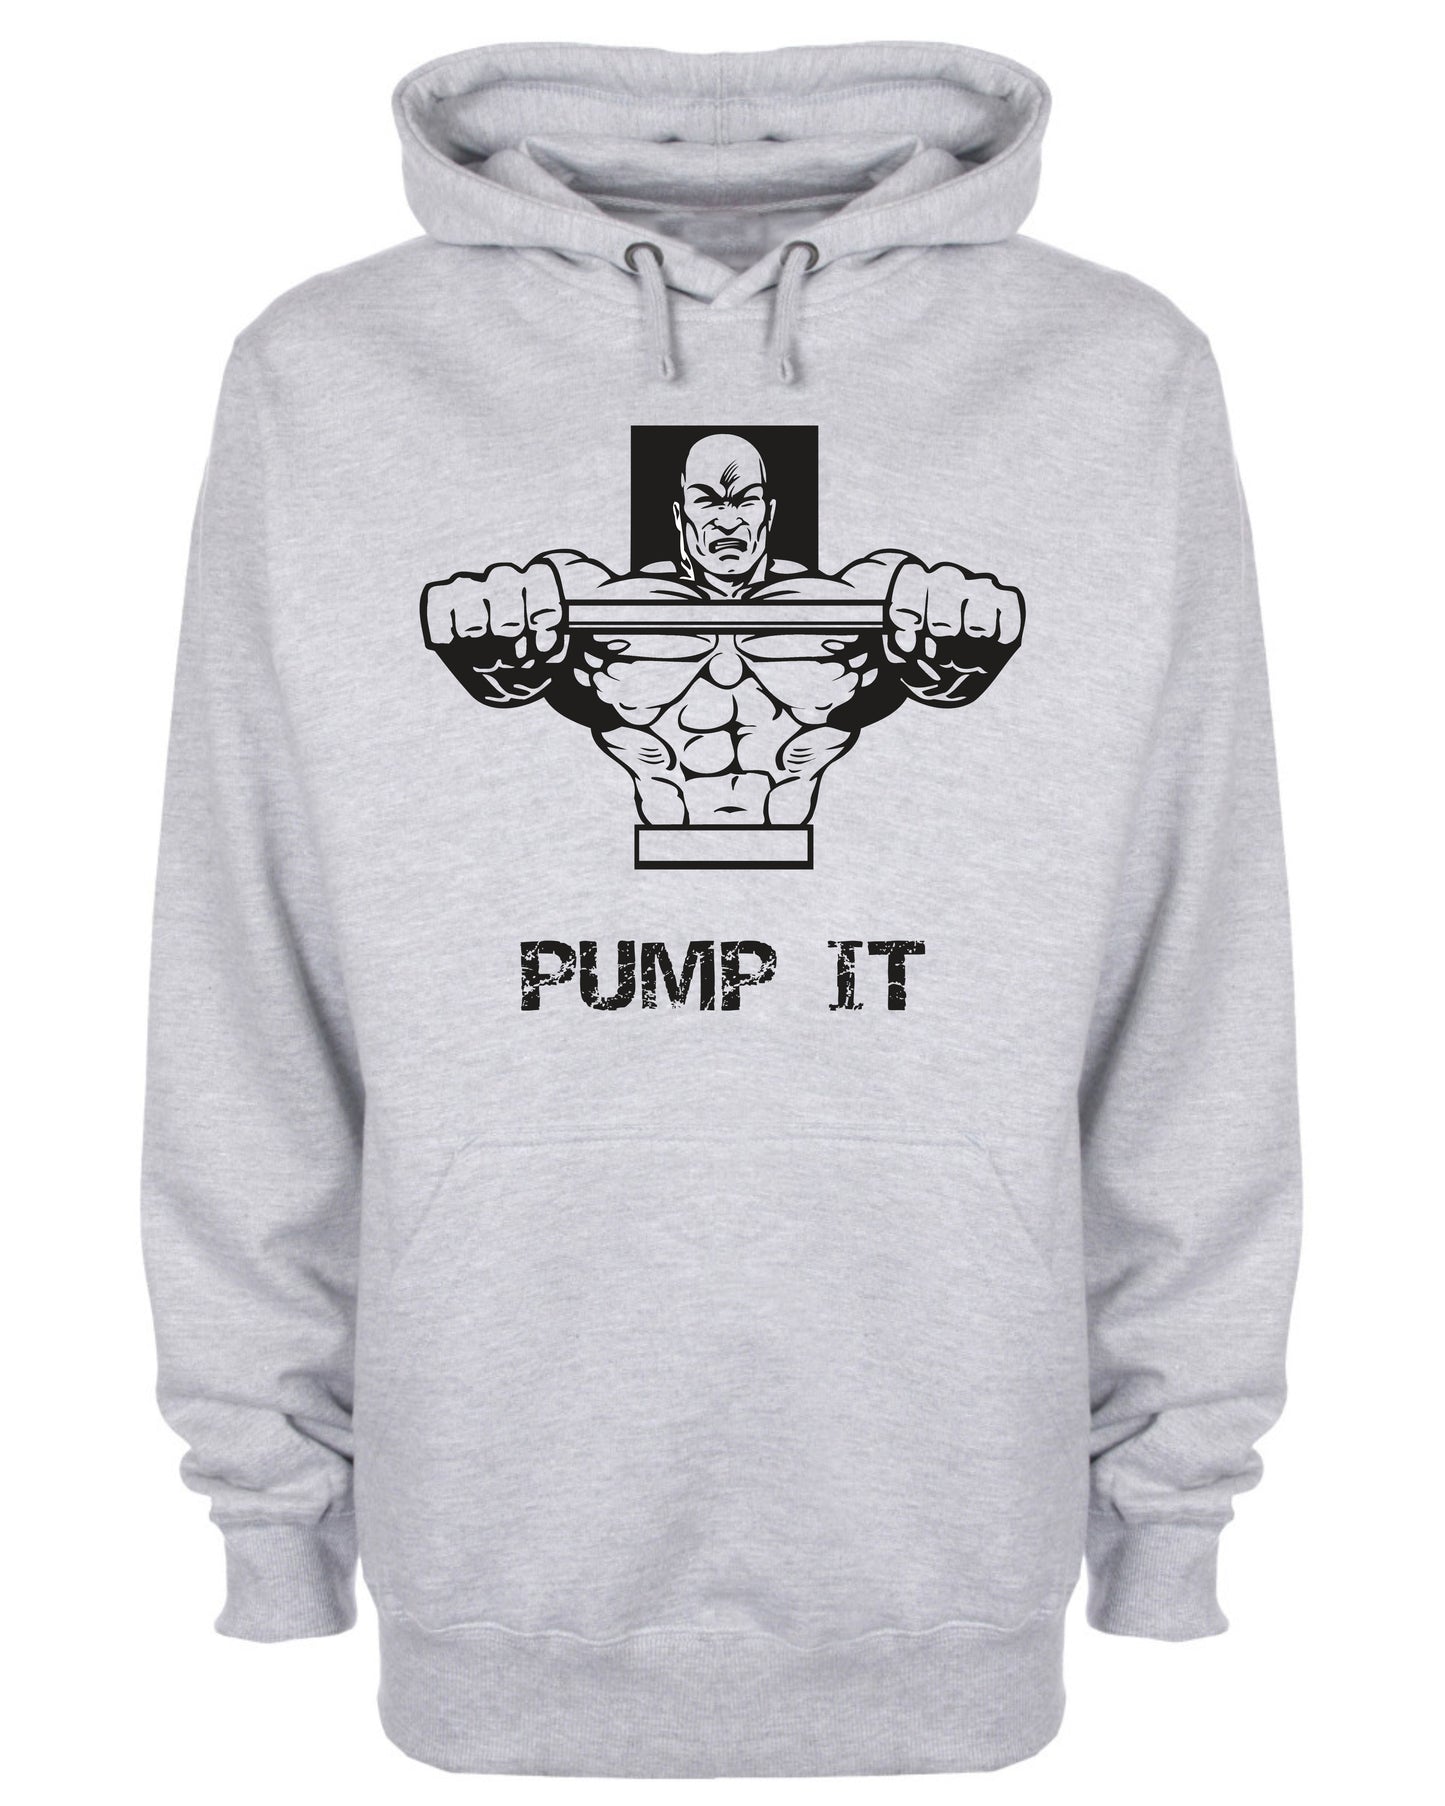 Pump It Gym Hoodie